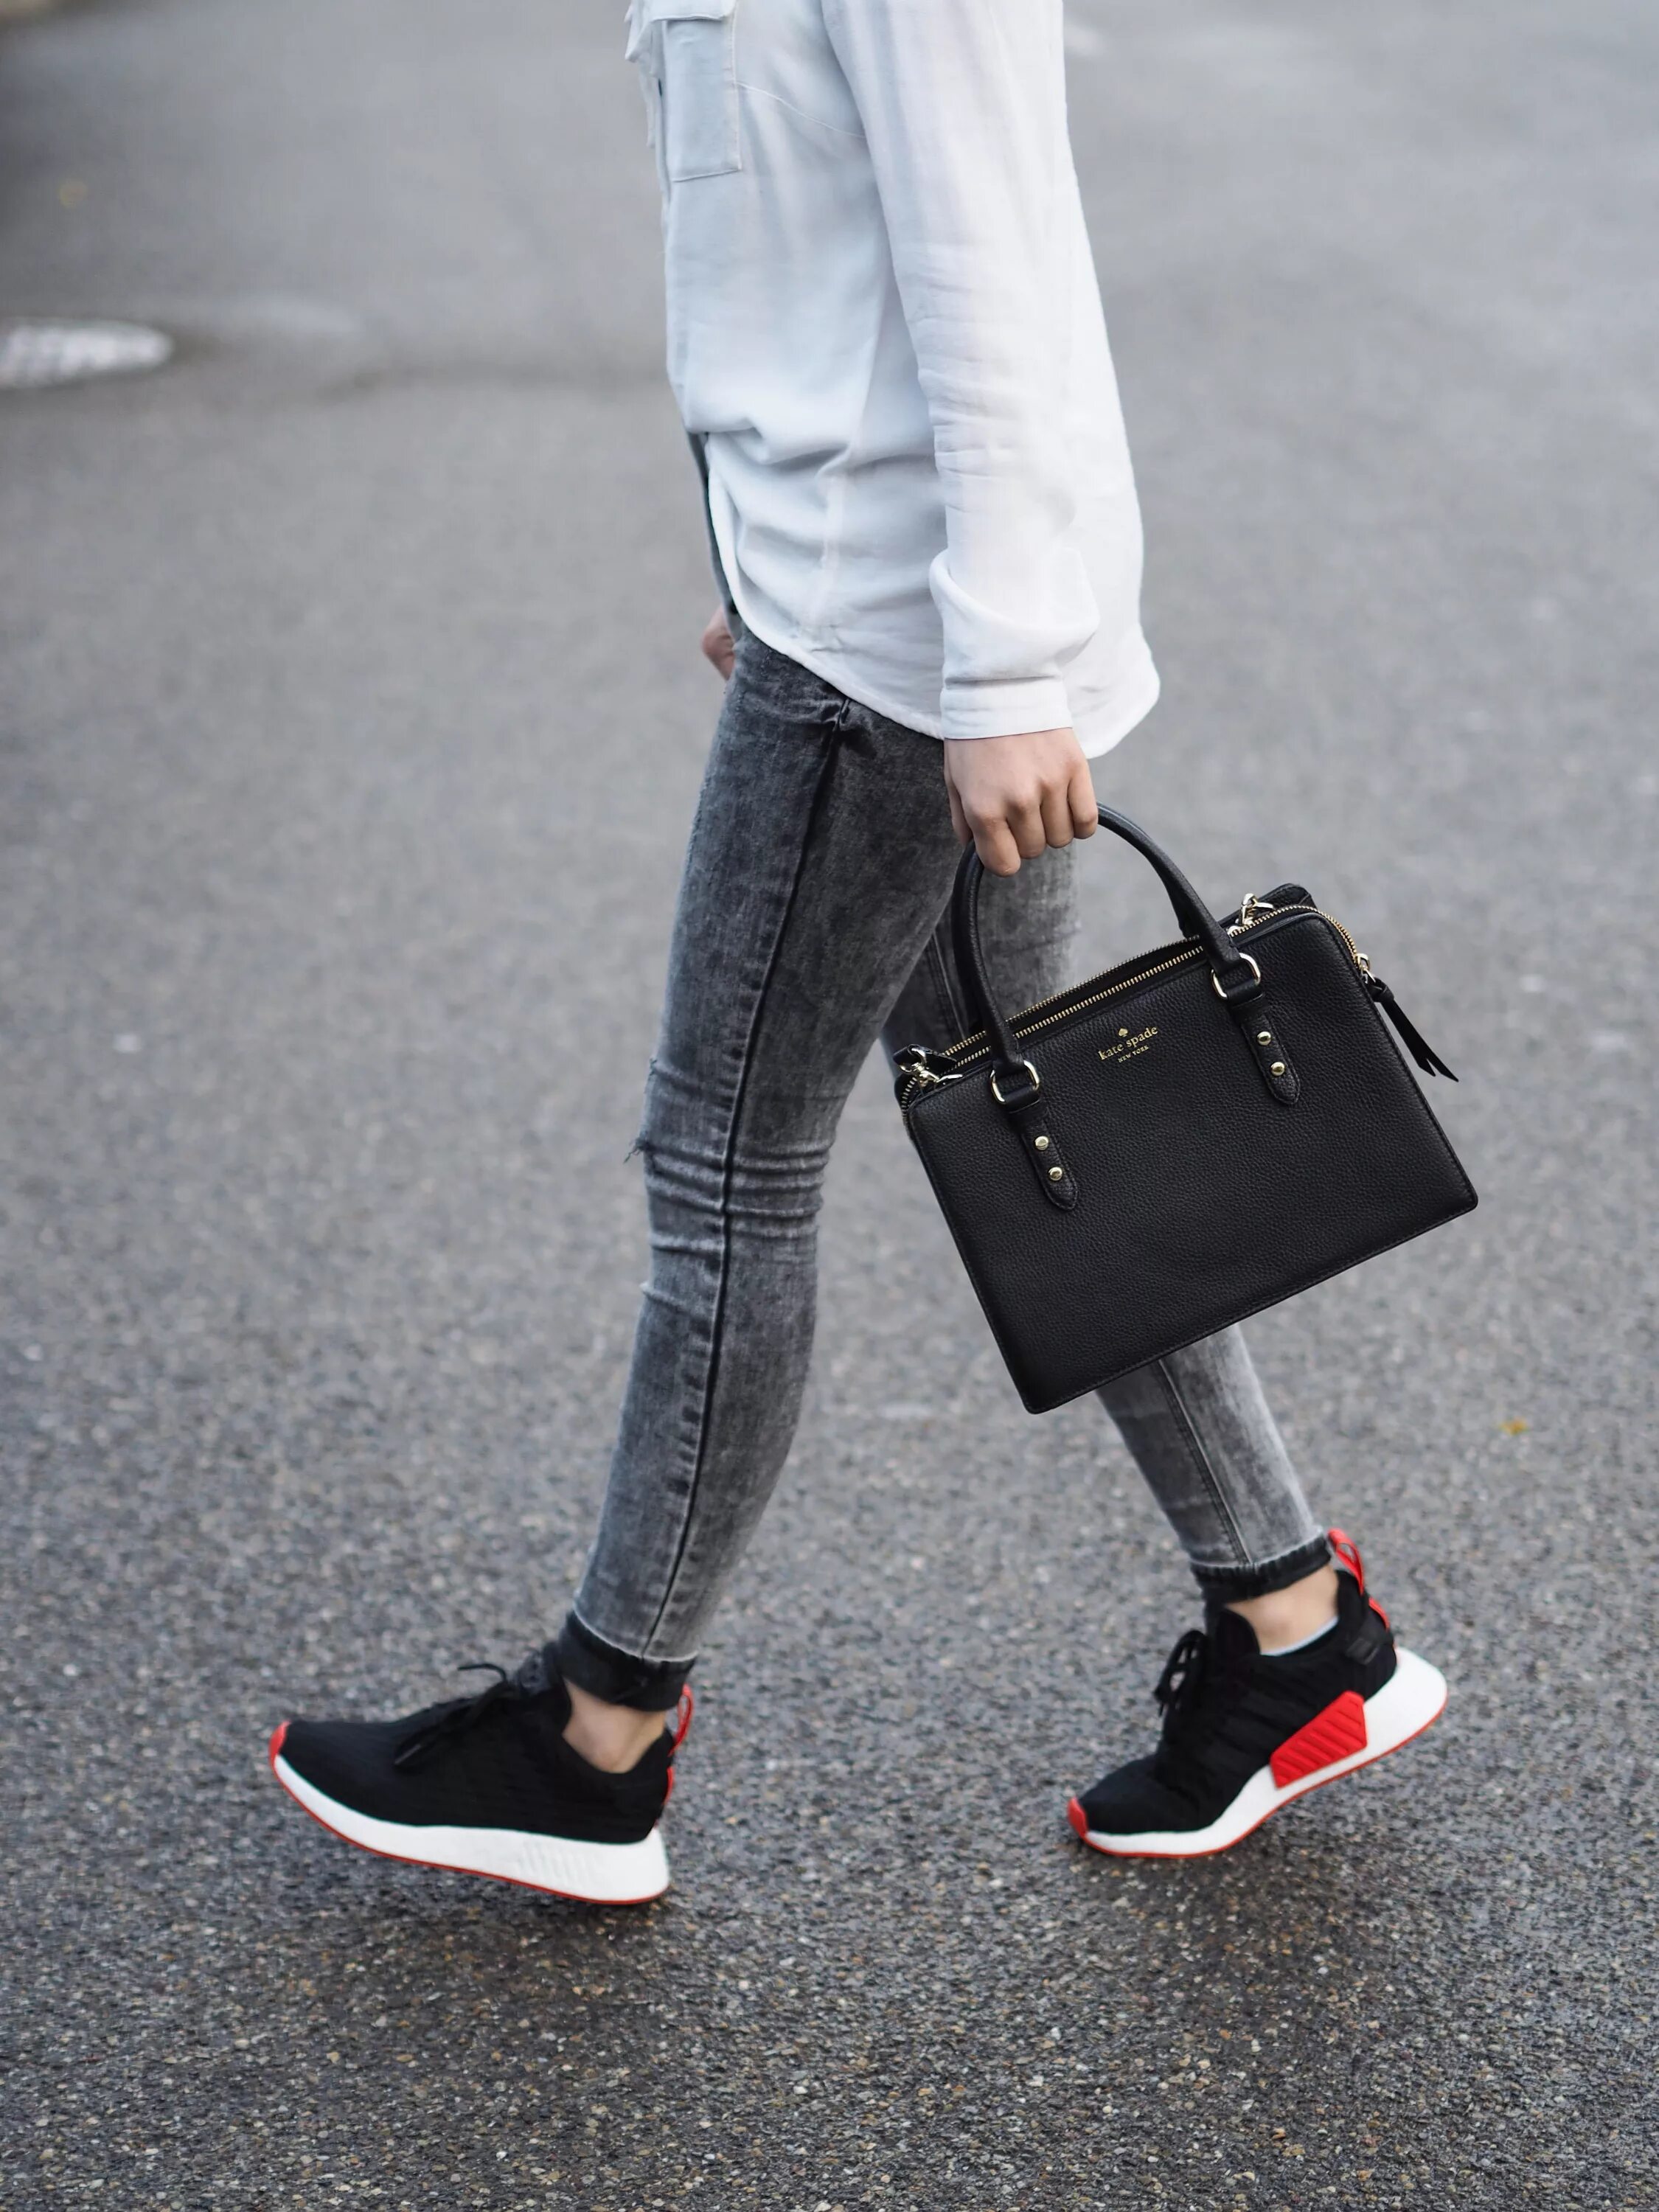 Adidas NMD С джинсами. Джинсы с кроссовками. Черные кеды и джинсы. Джинсы с черными кроссовками.